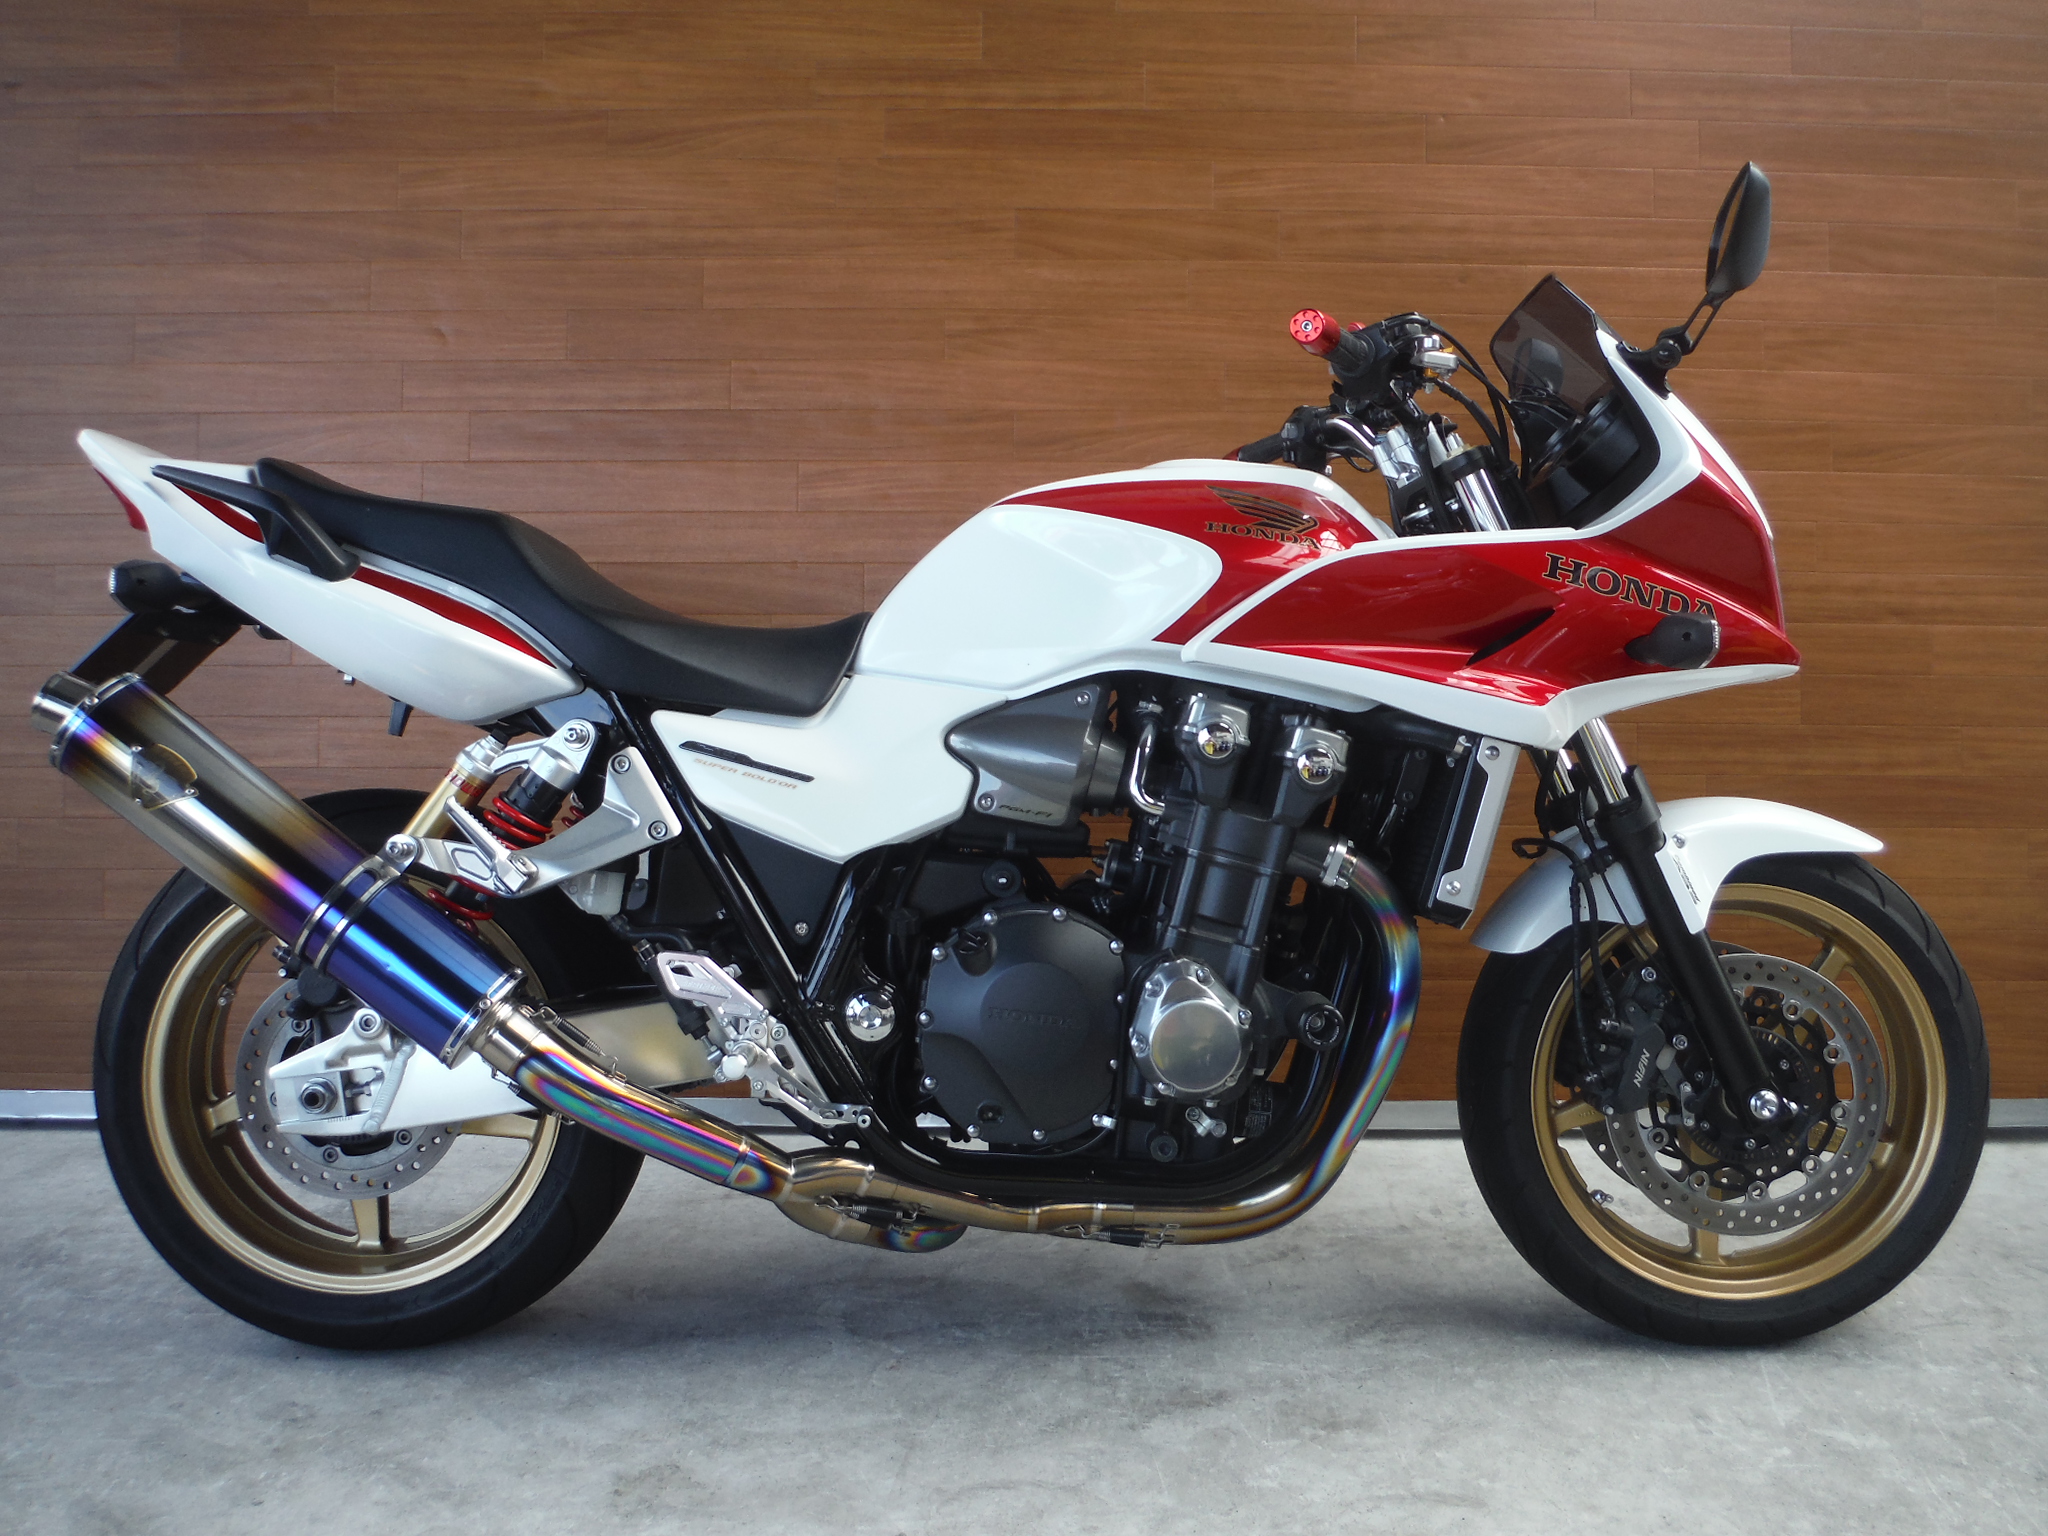 熊本中古車バイク情報 ホンダ Cb1300sb Abs 1300 11年モデル 赤白 熊本のバイクショップ アール バイクの新車 中古 車販売や買取 レンタルバイクのことならおまかせください